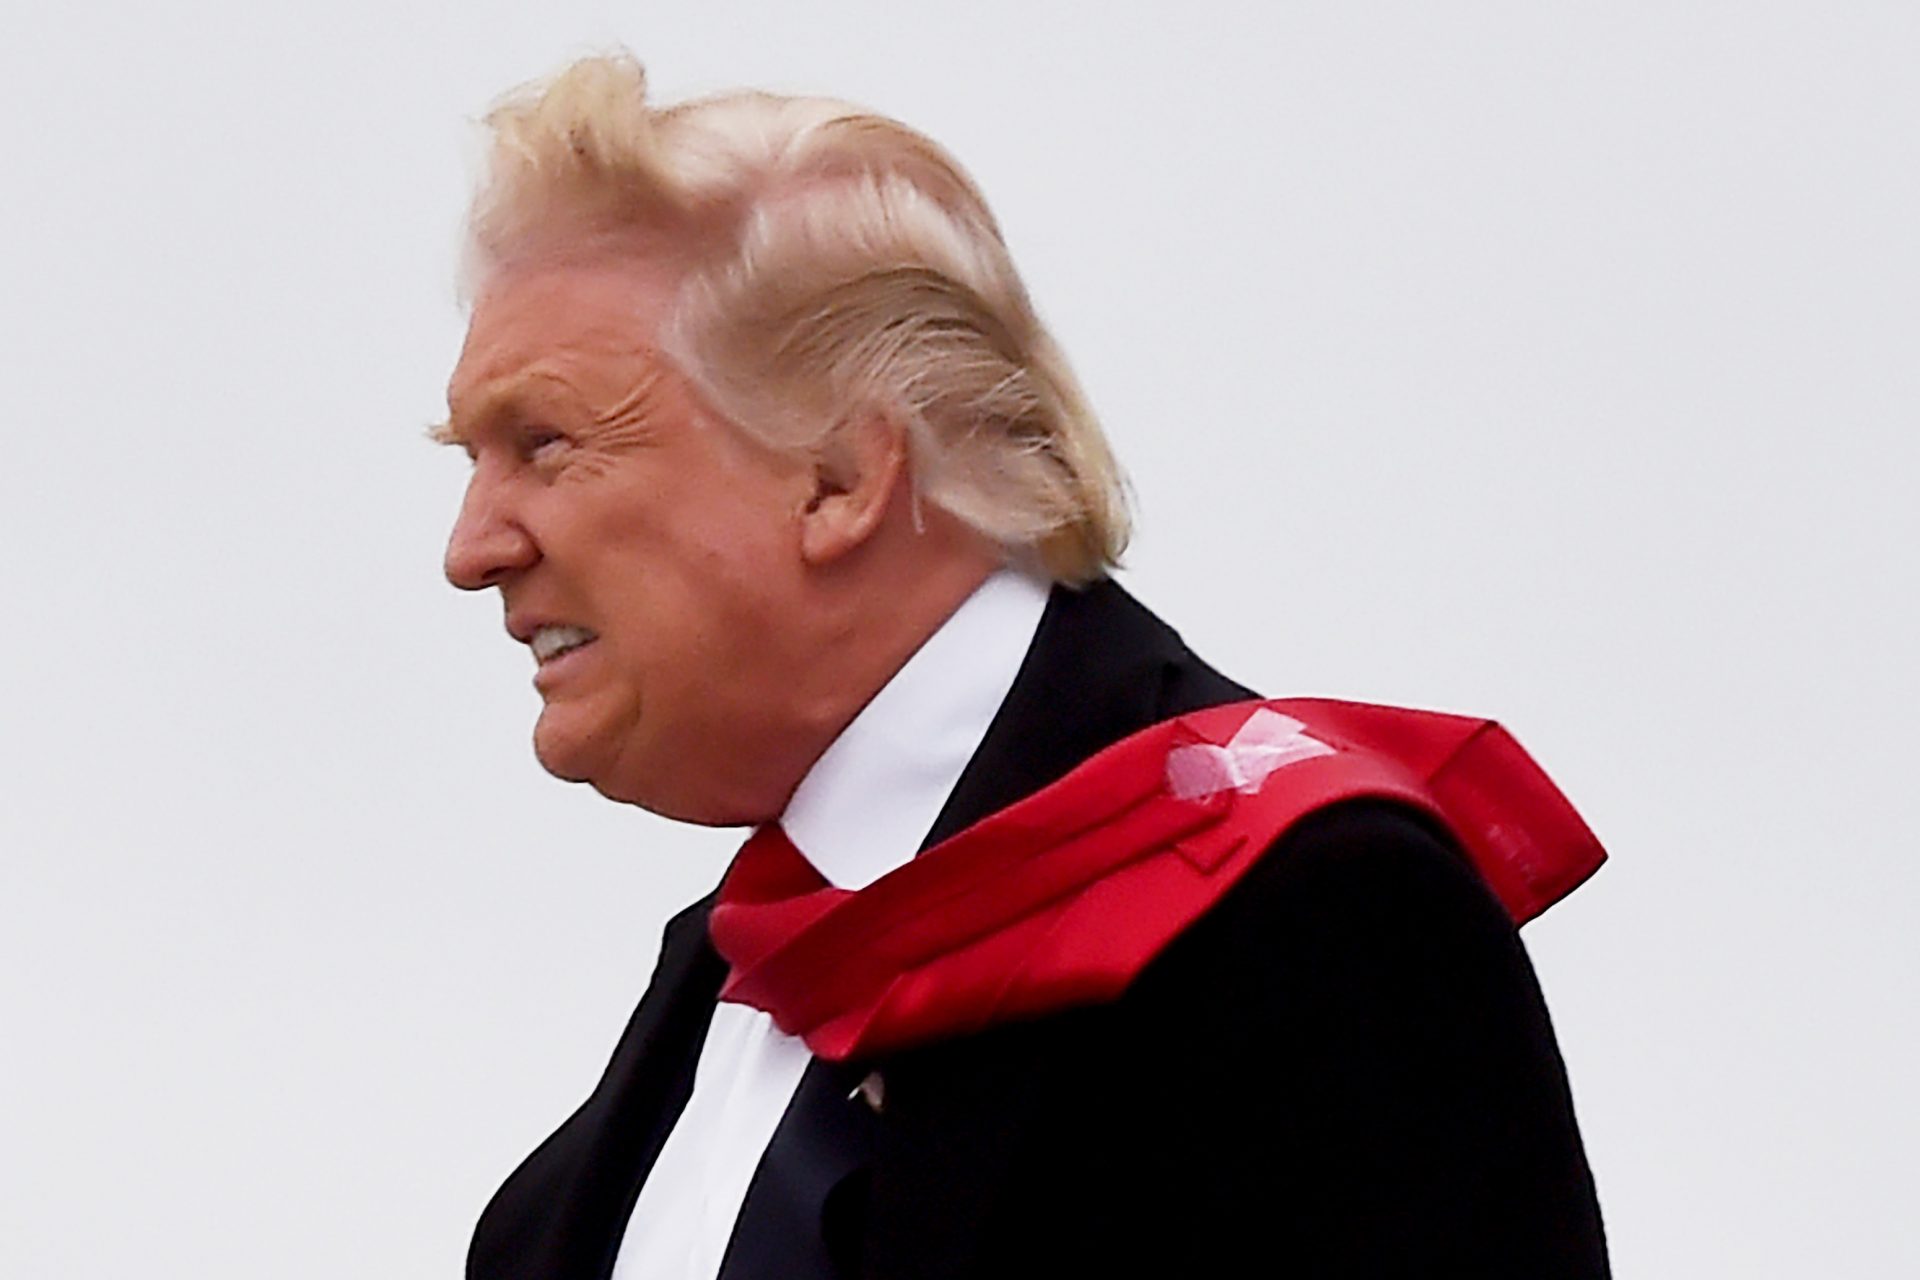 Le fiasco de la cravate scotchée de Trump 